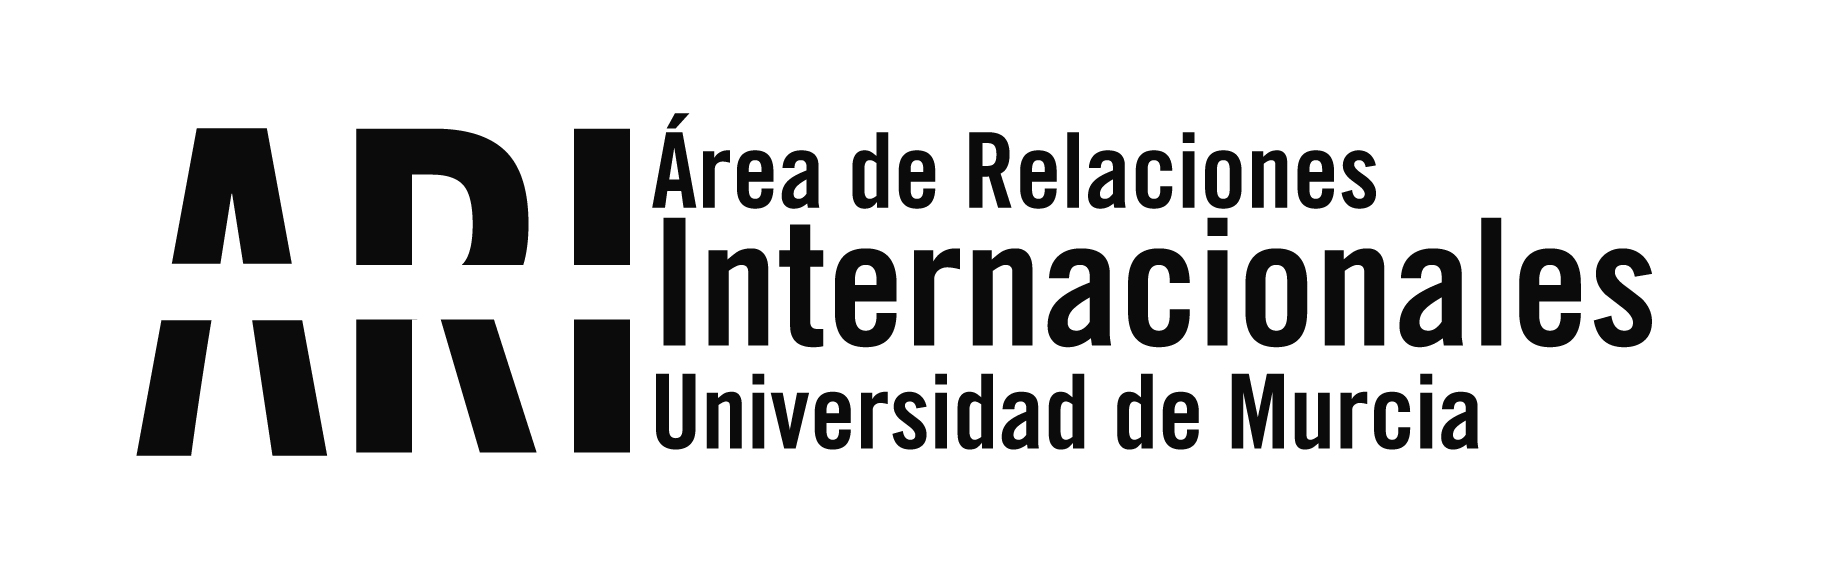 Bienvenida a los nuevos estudiantes internacionales de la Universidad de Murcia 2020-21 #BUMI - Área de Relaciones Internacionales